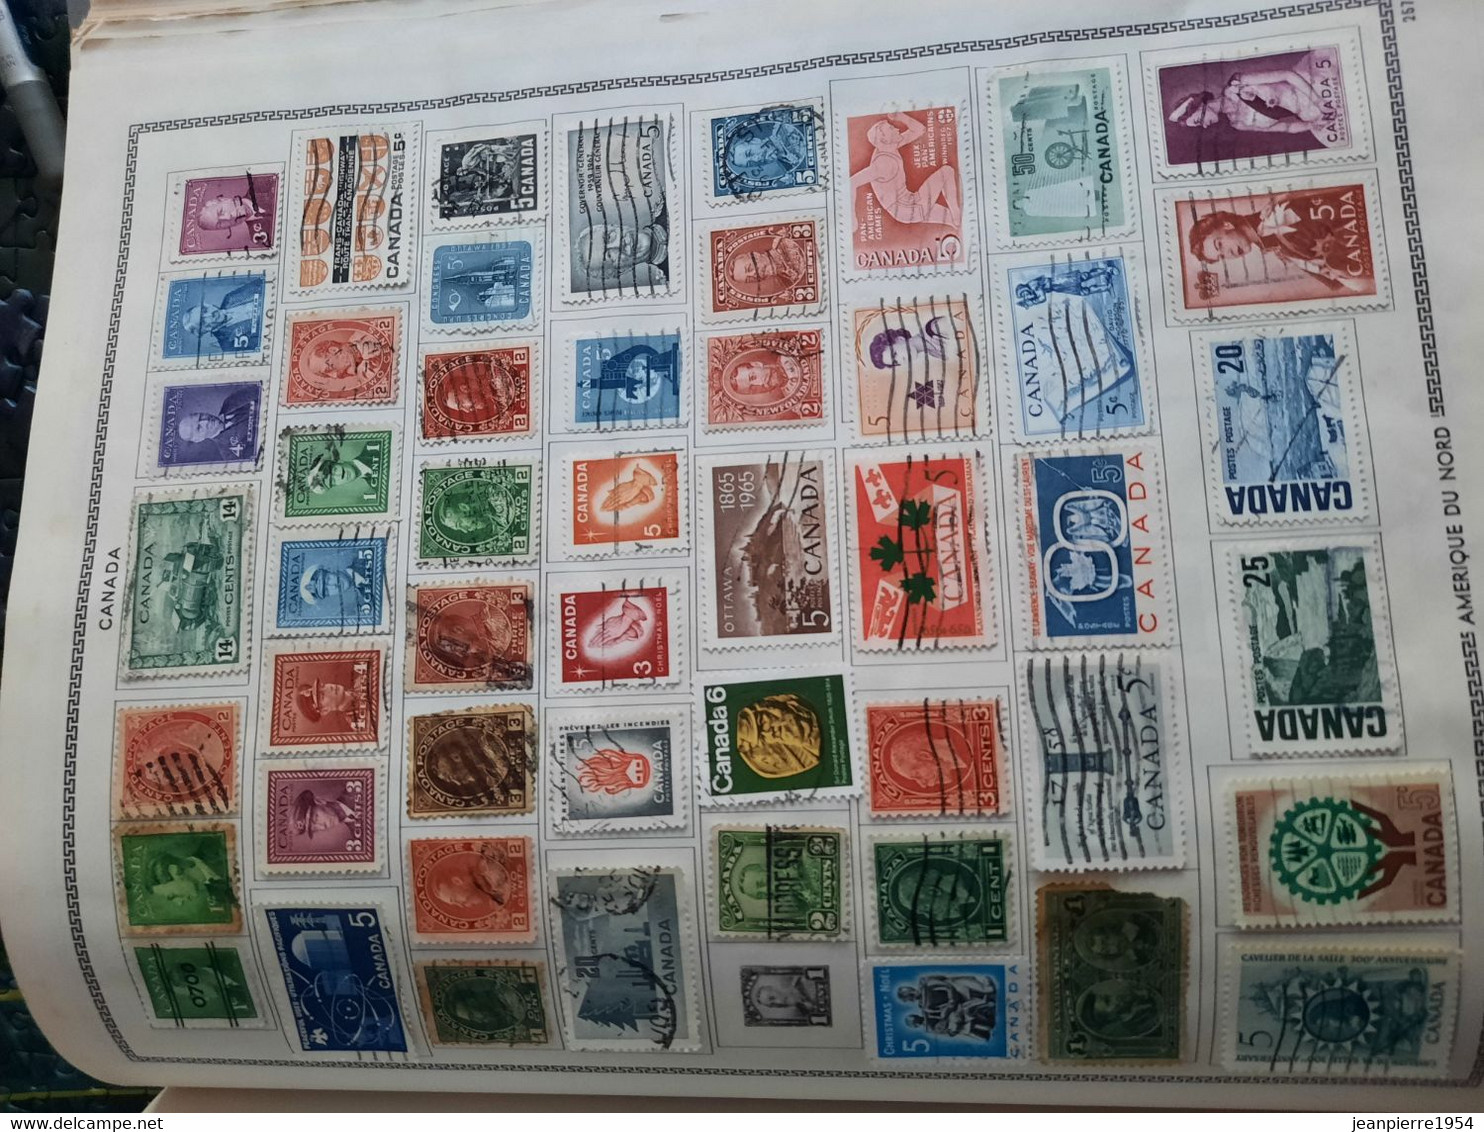 album de timbres du monde obliteres sur feuille avec des timbres des colonies française